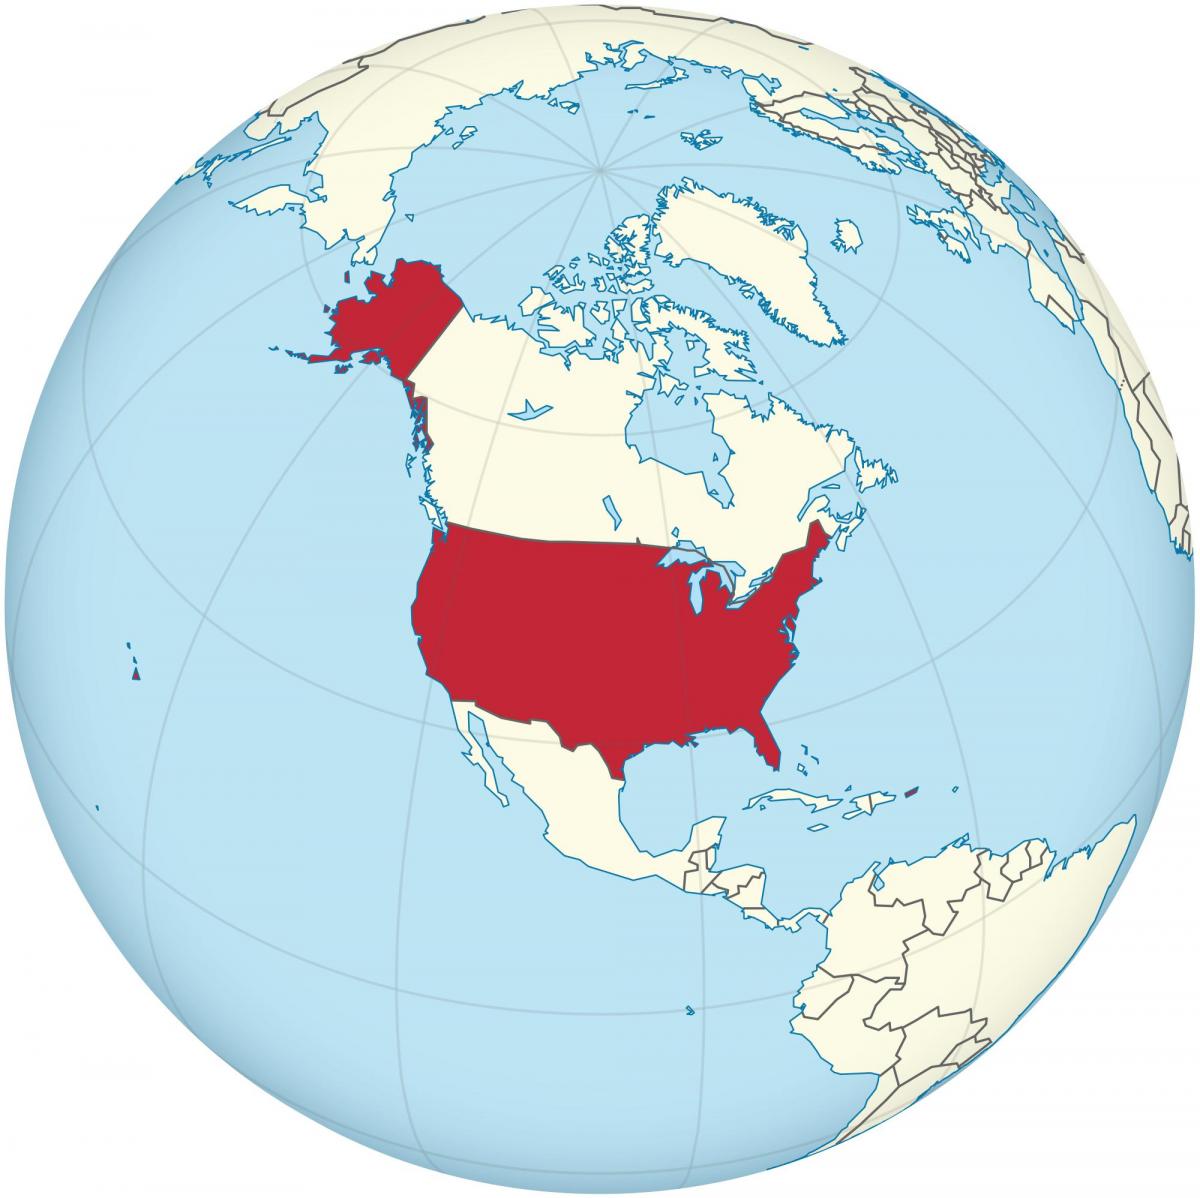 Situation des États-Unis sur la carte des Amériques